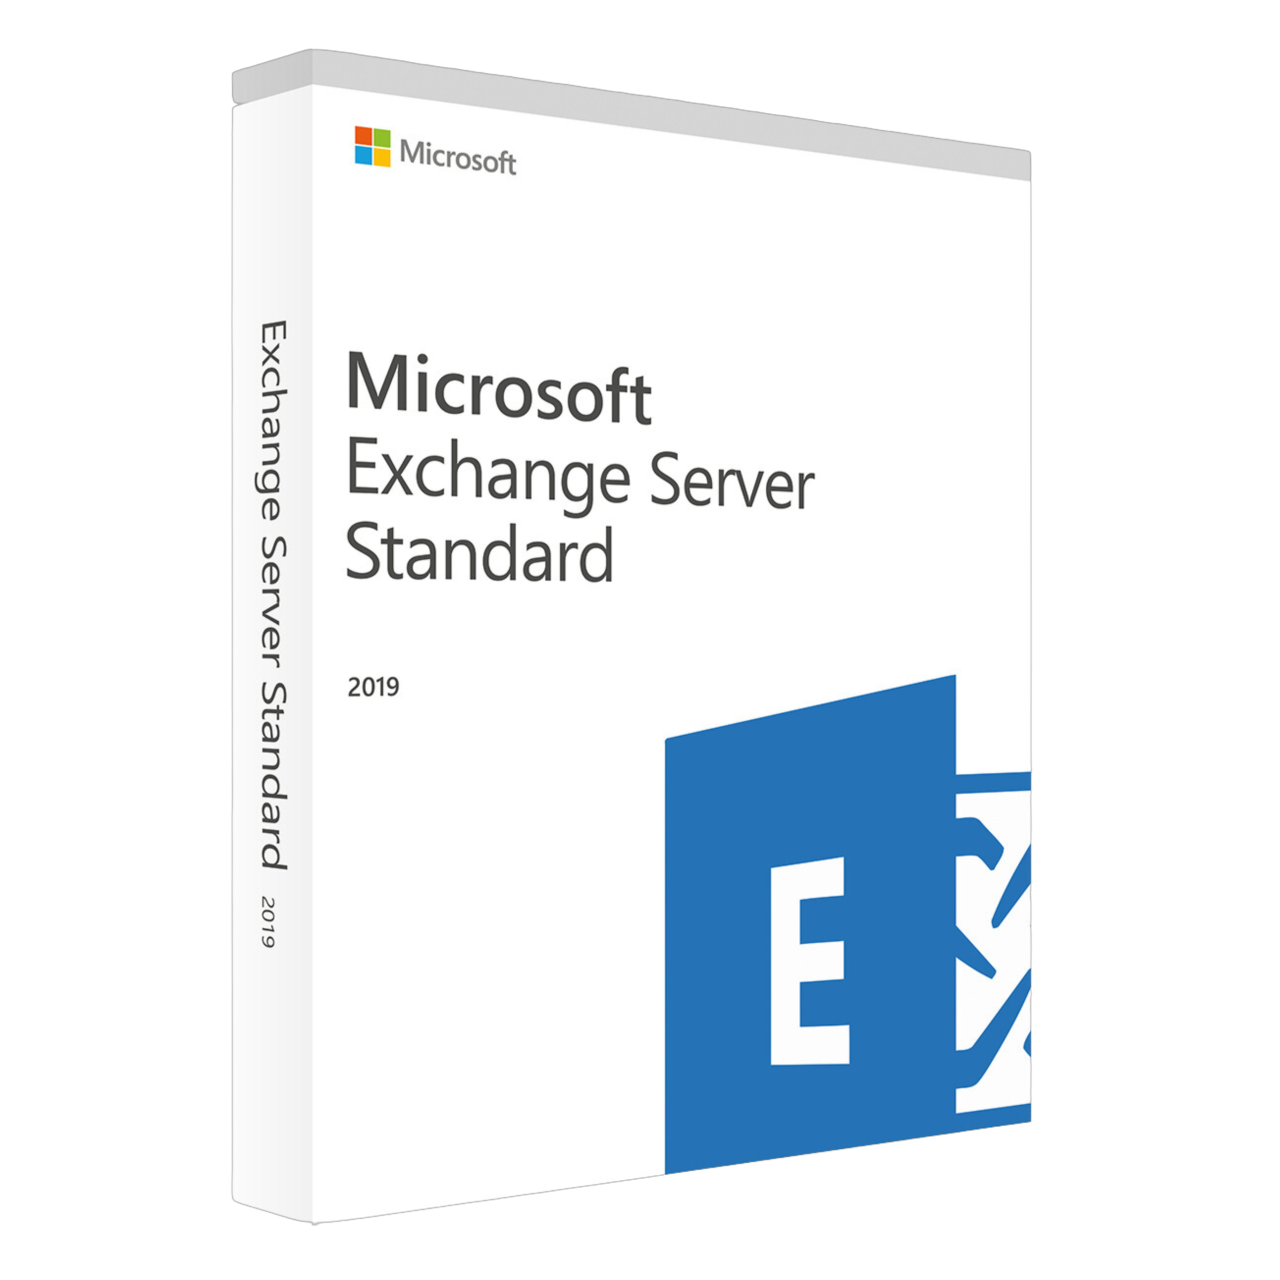 Image of Exchange Server 2019 Standard